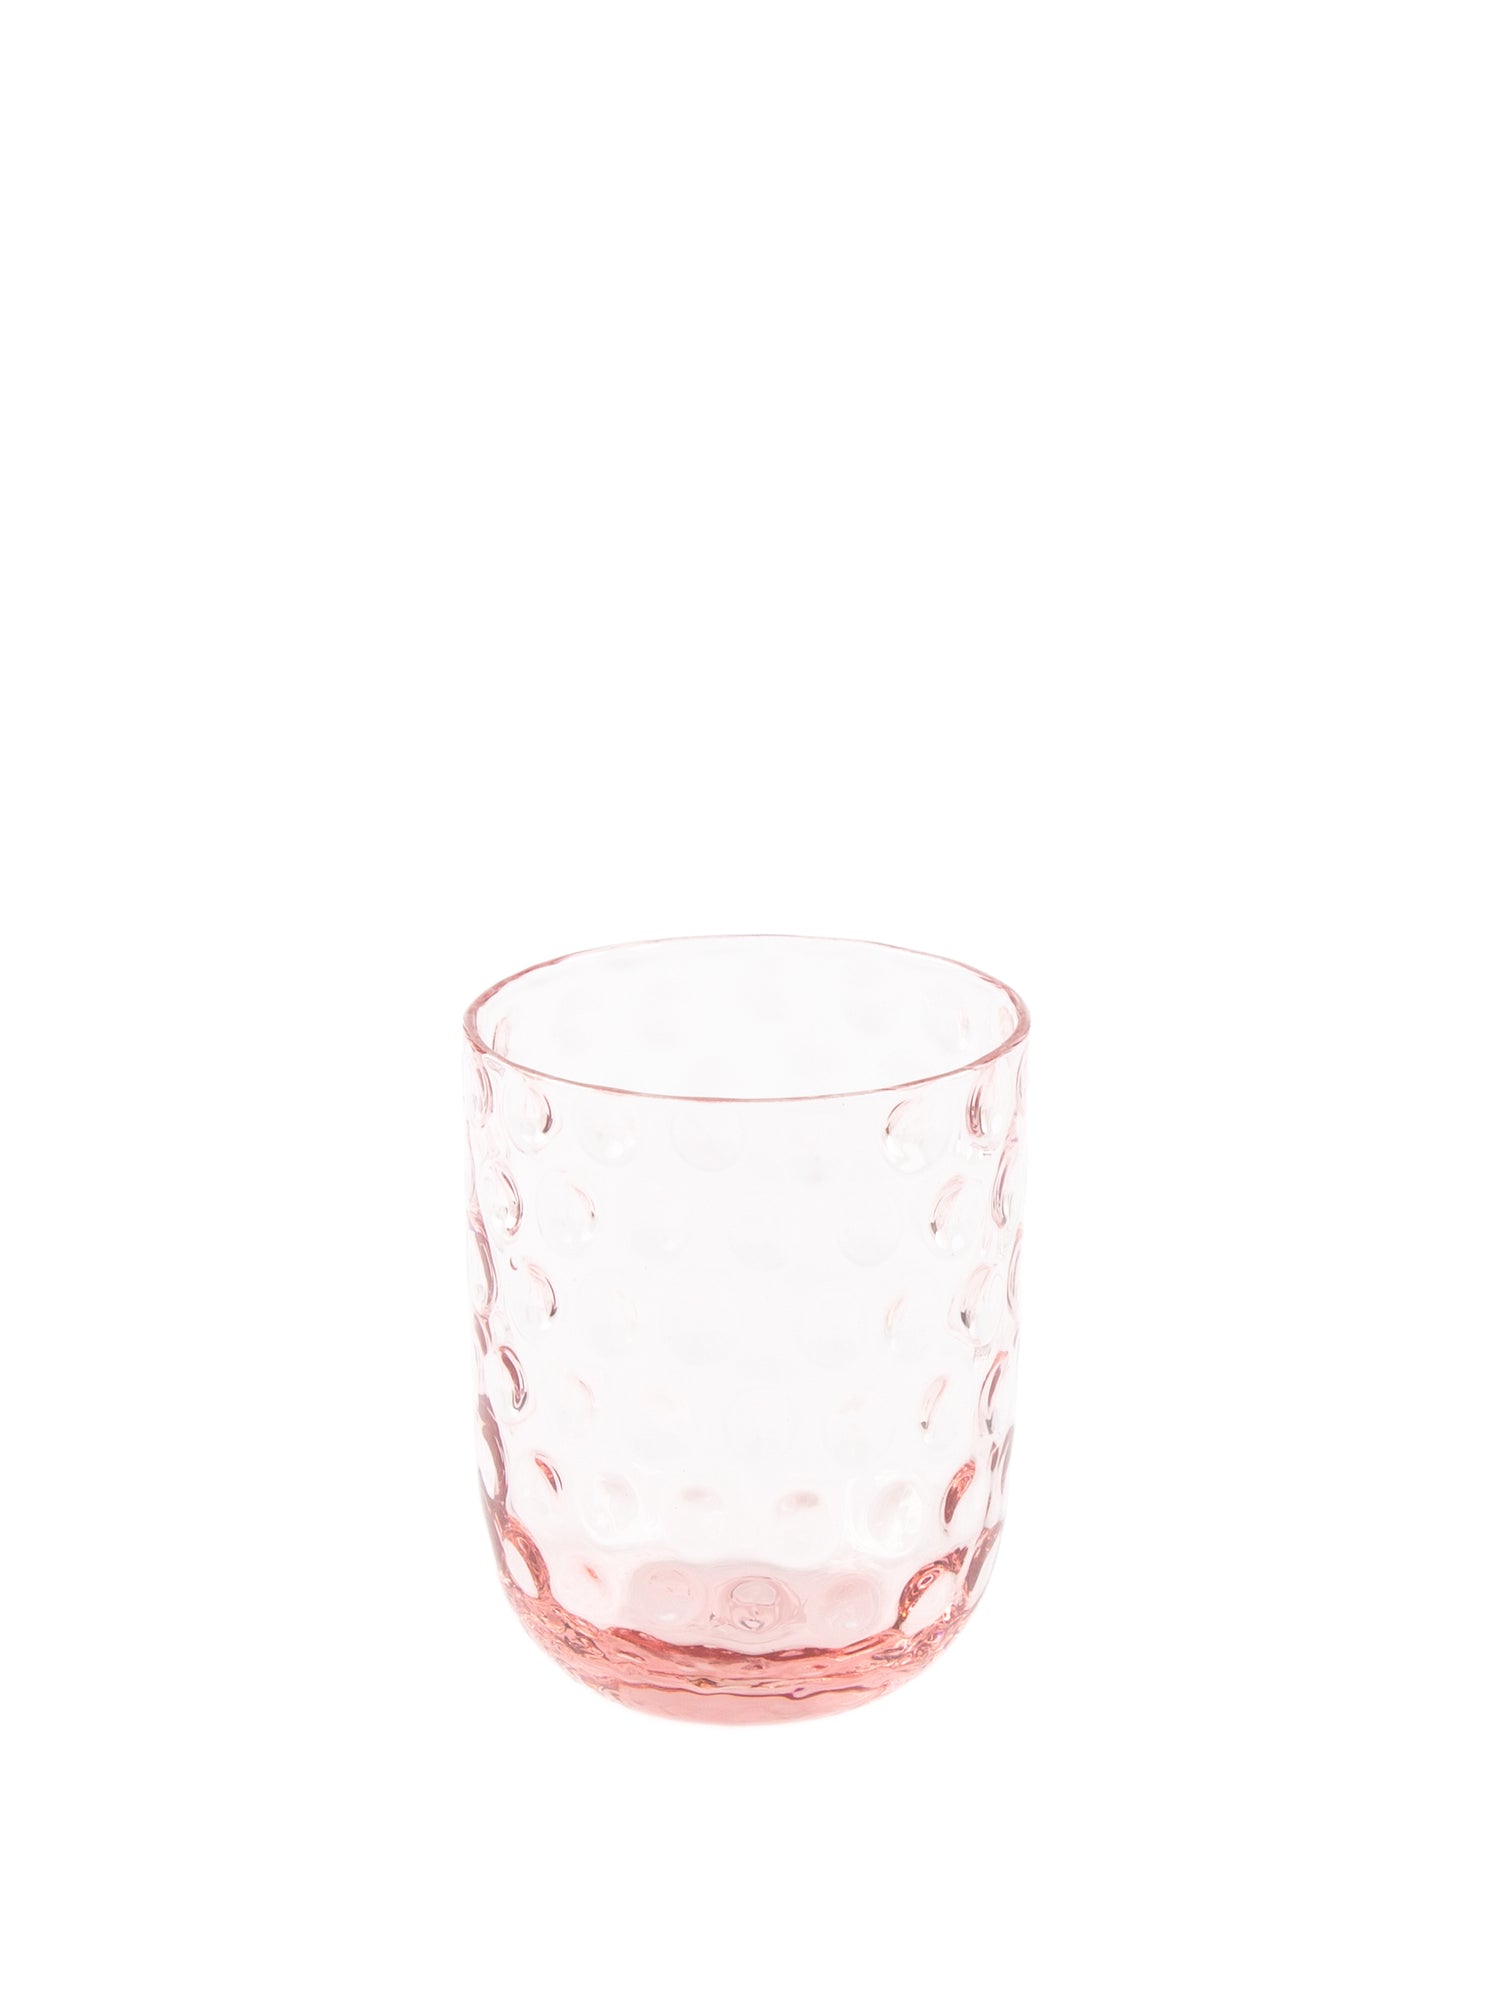 Danish Summer Tumbler Small Drops, pink (25 cl)